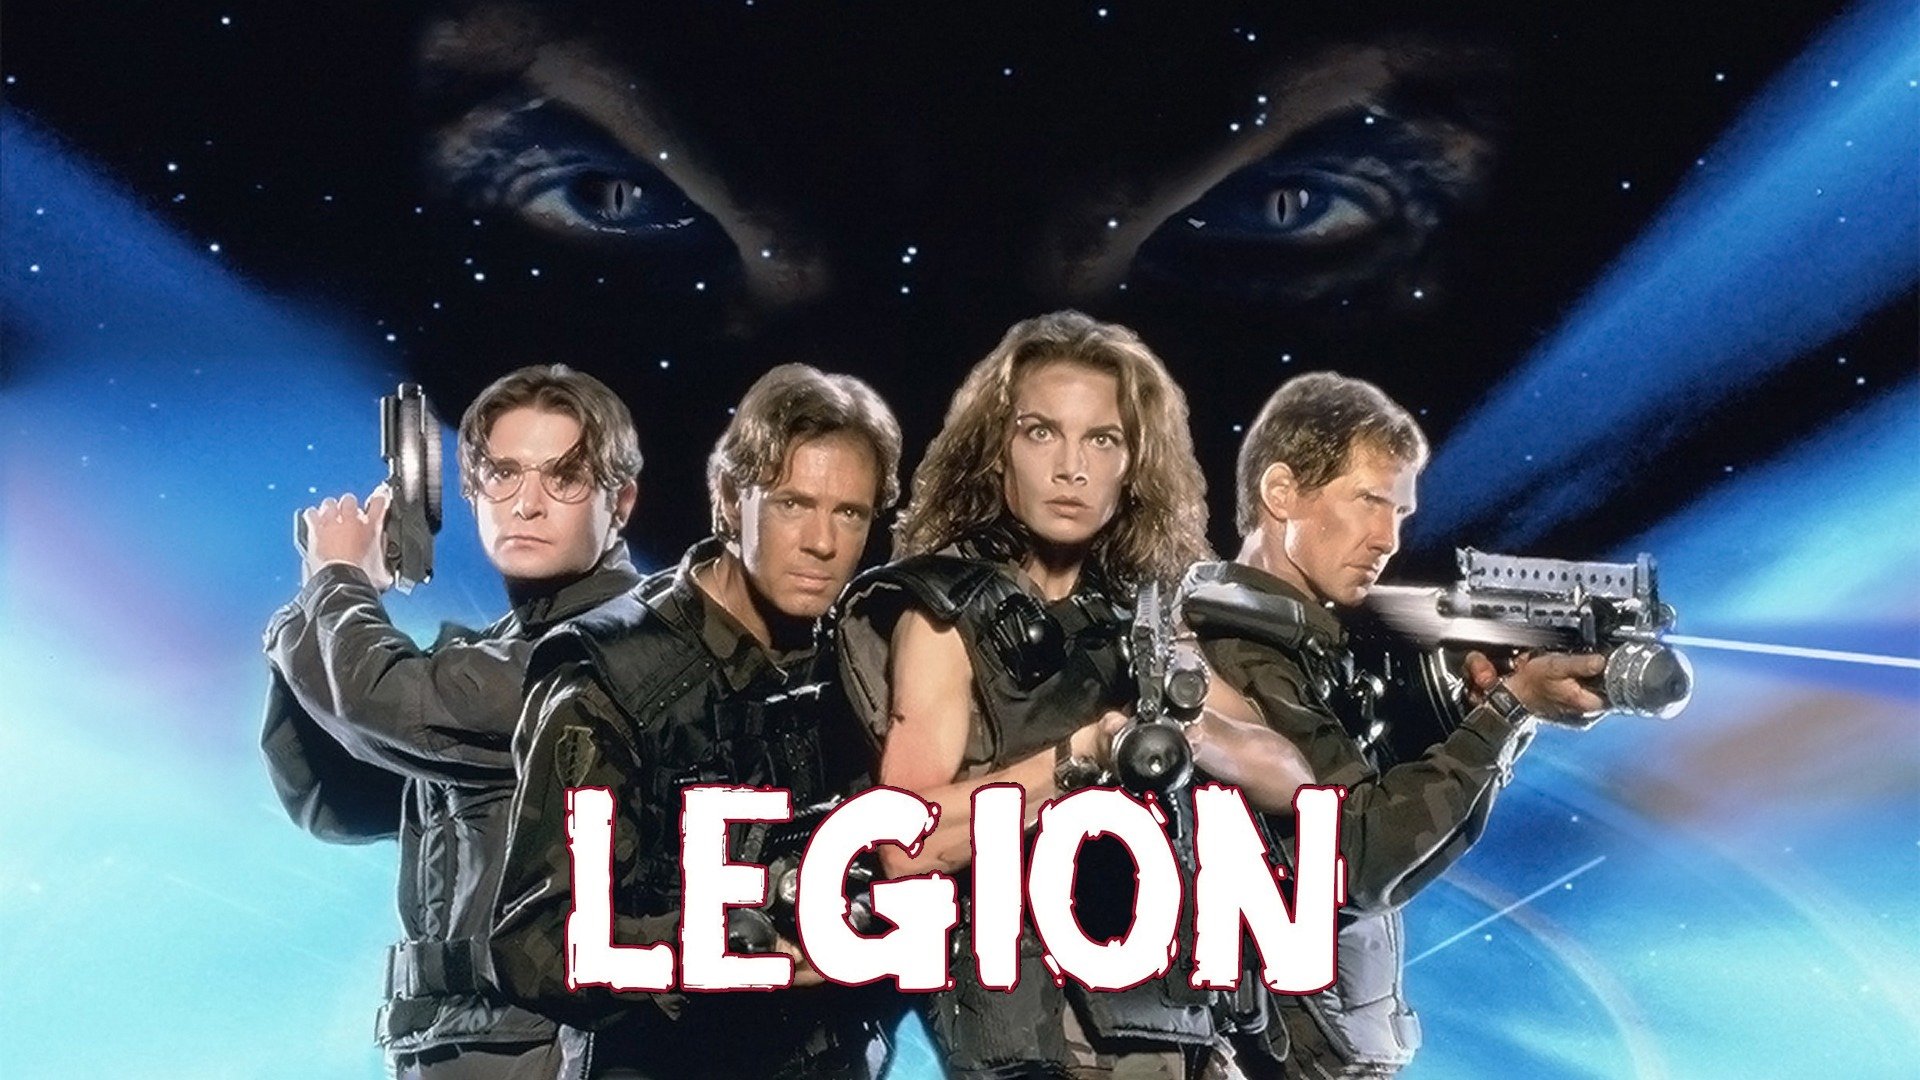 legion movie wallpaper